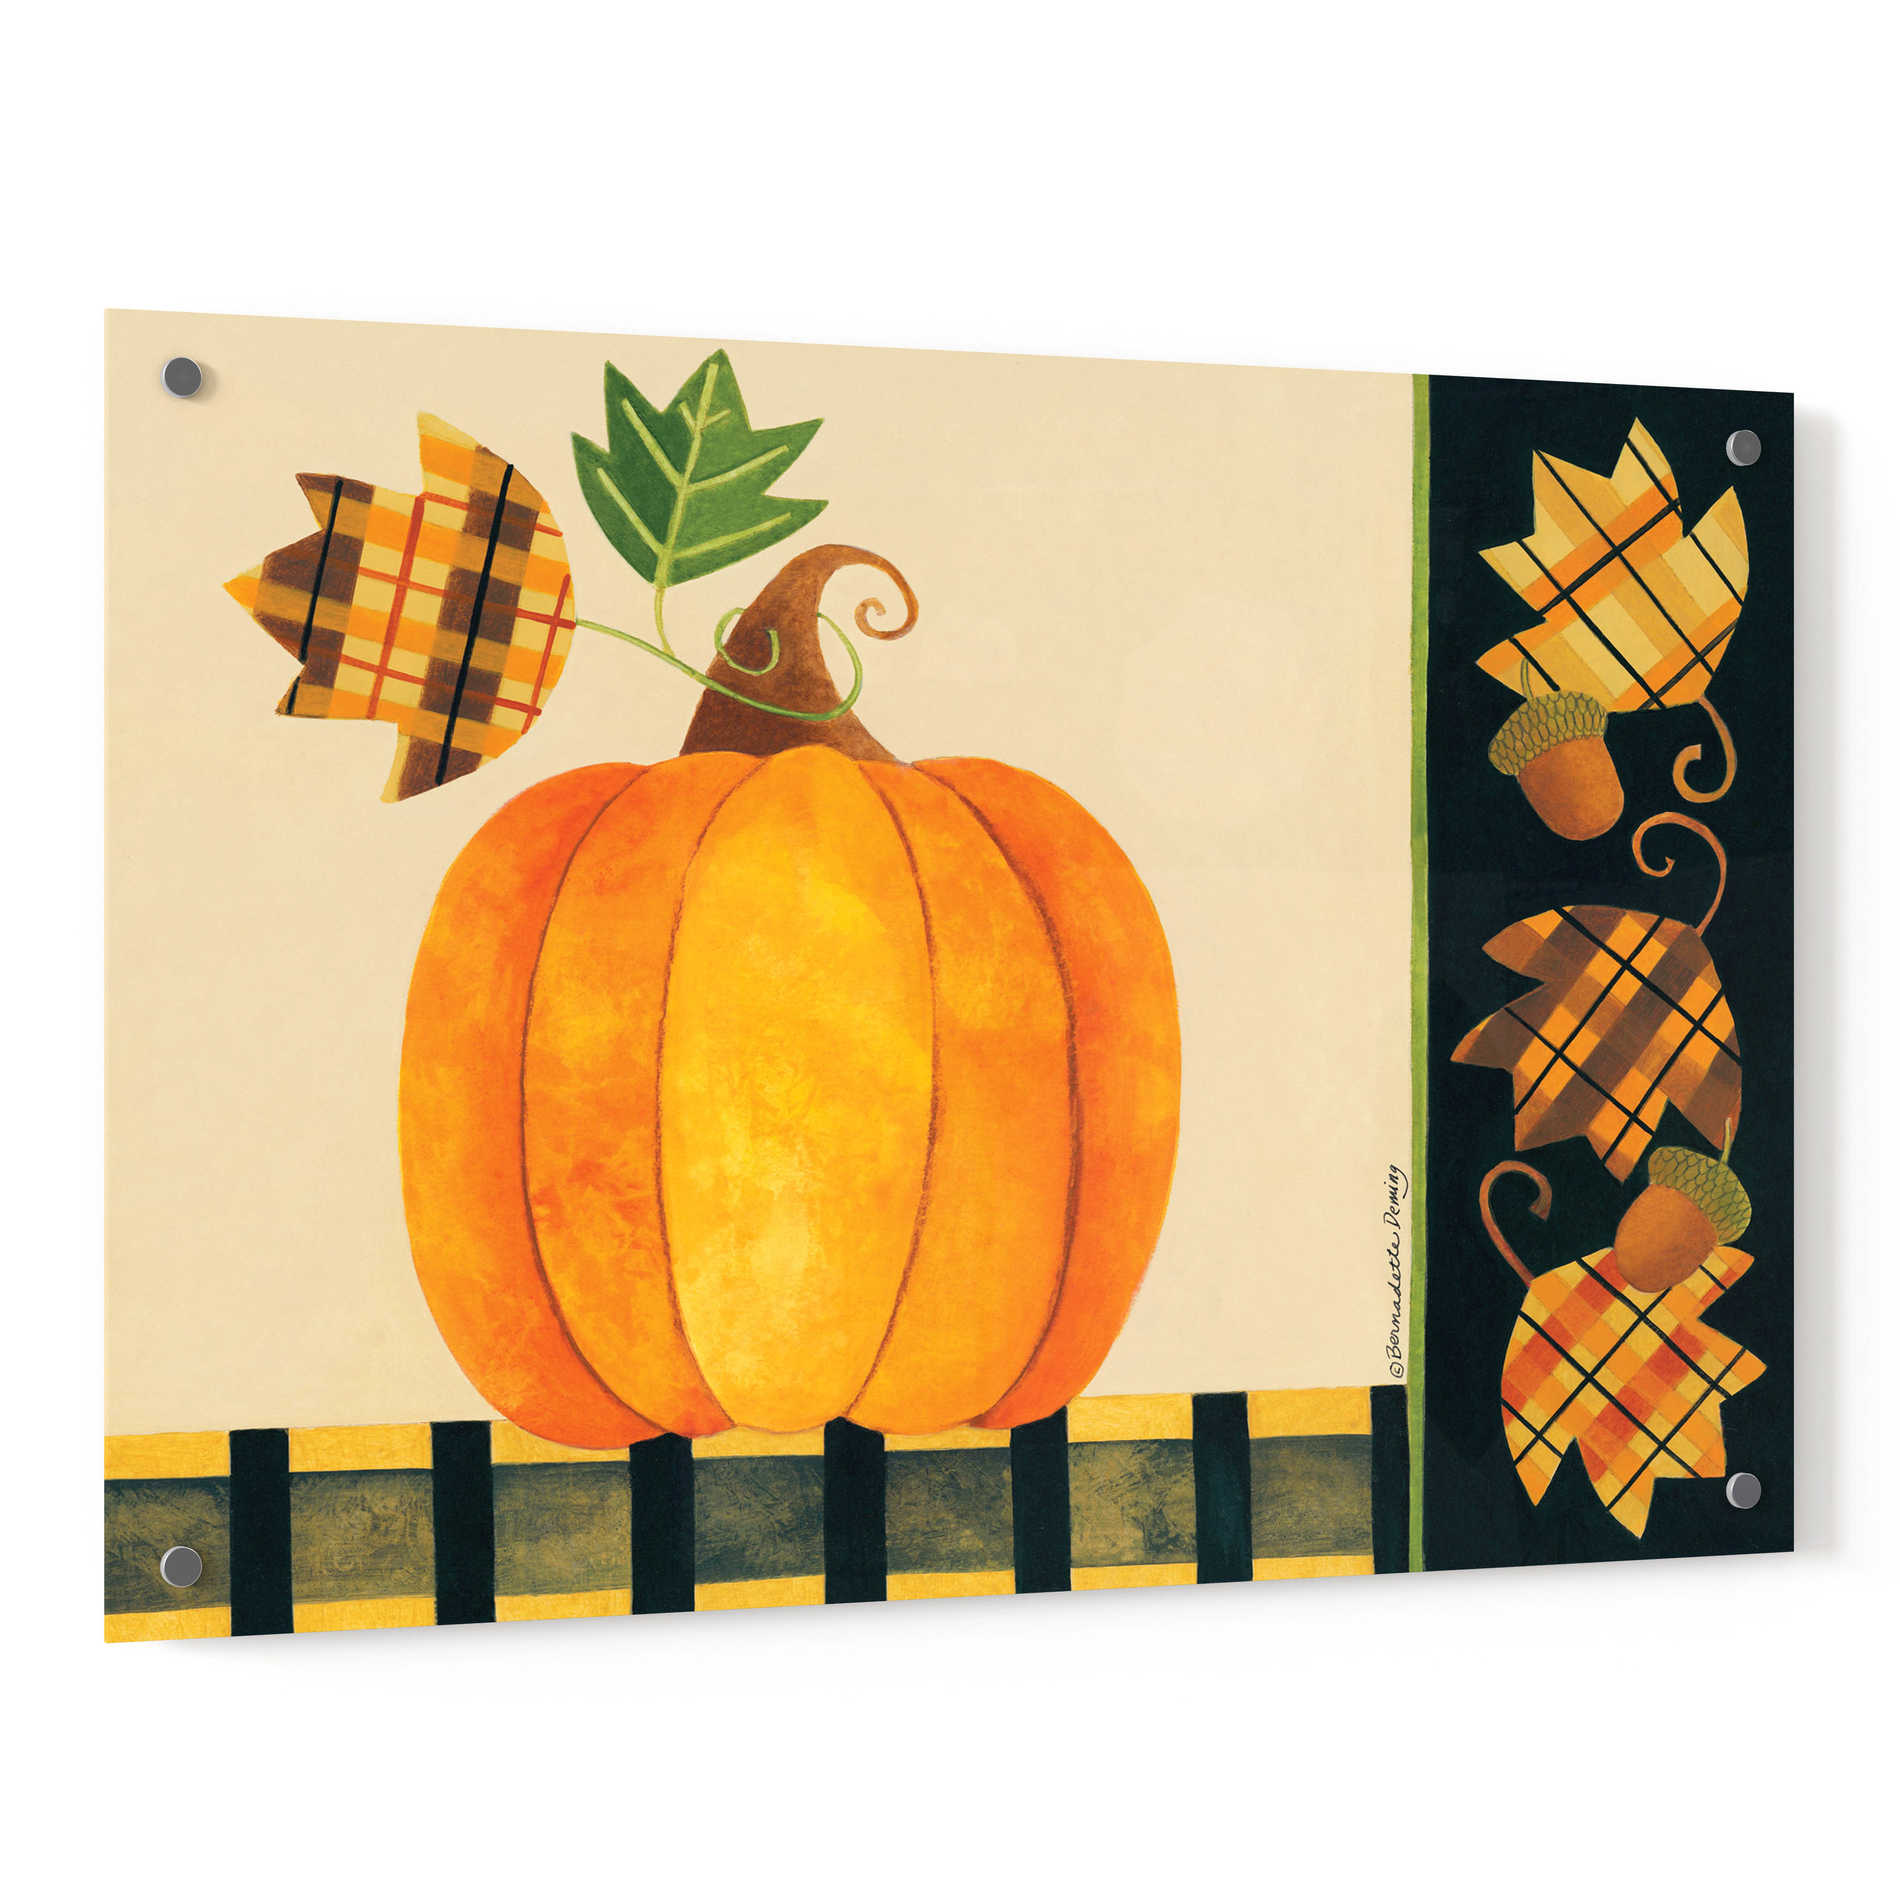 Epic Art "Pumpkin" by Bernadette Deming, Acrylic Glass Wall Art,36x24